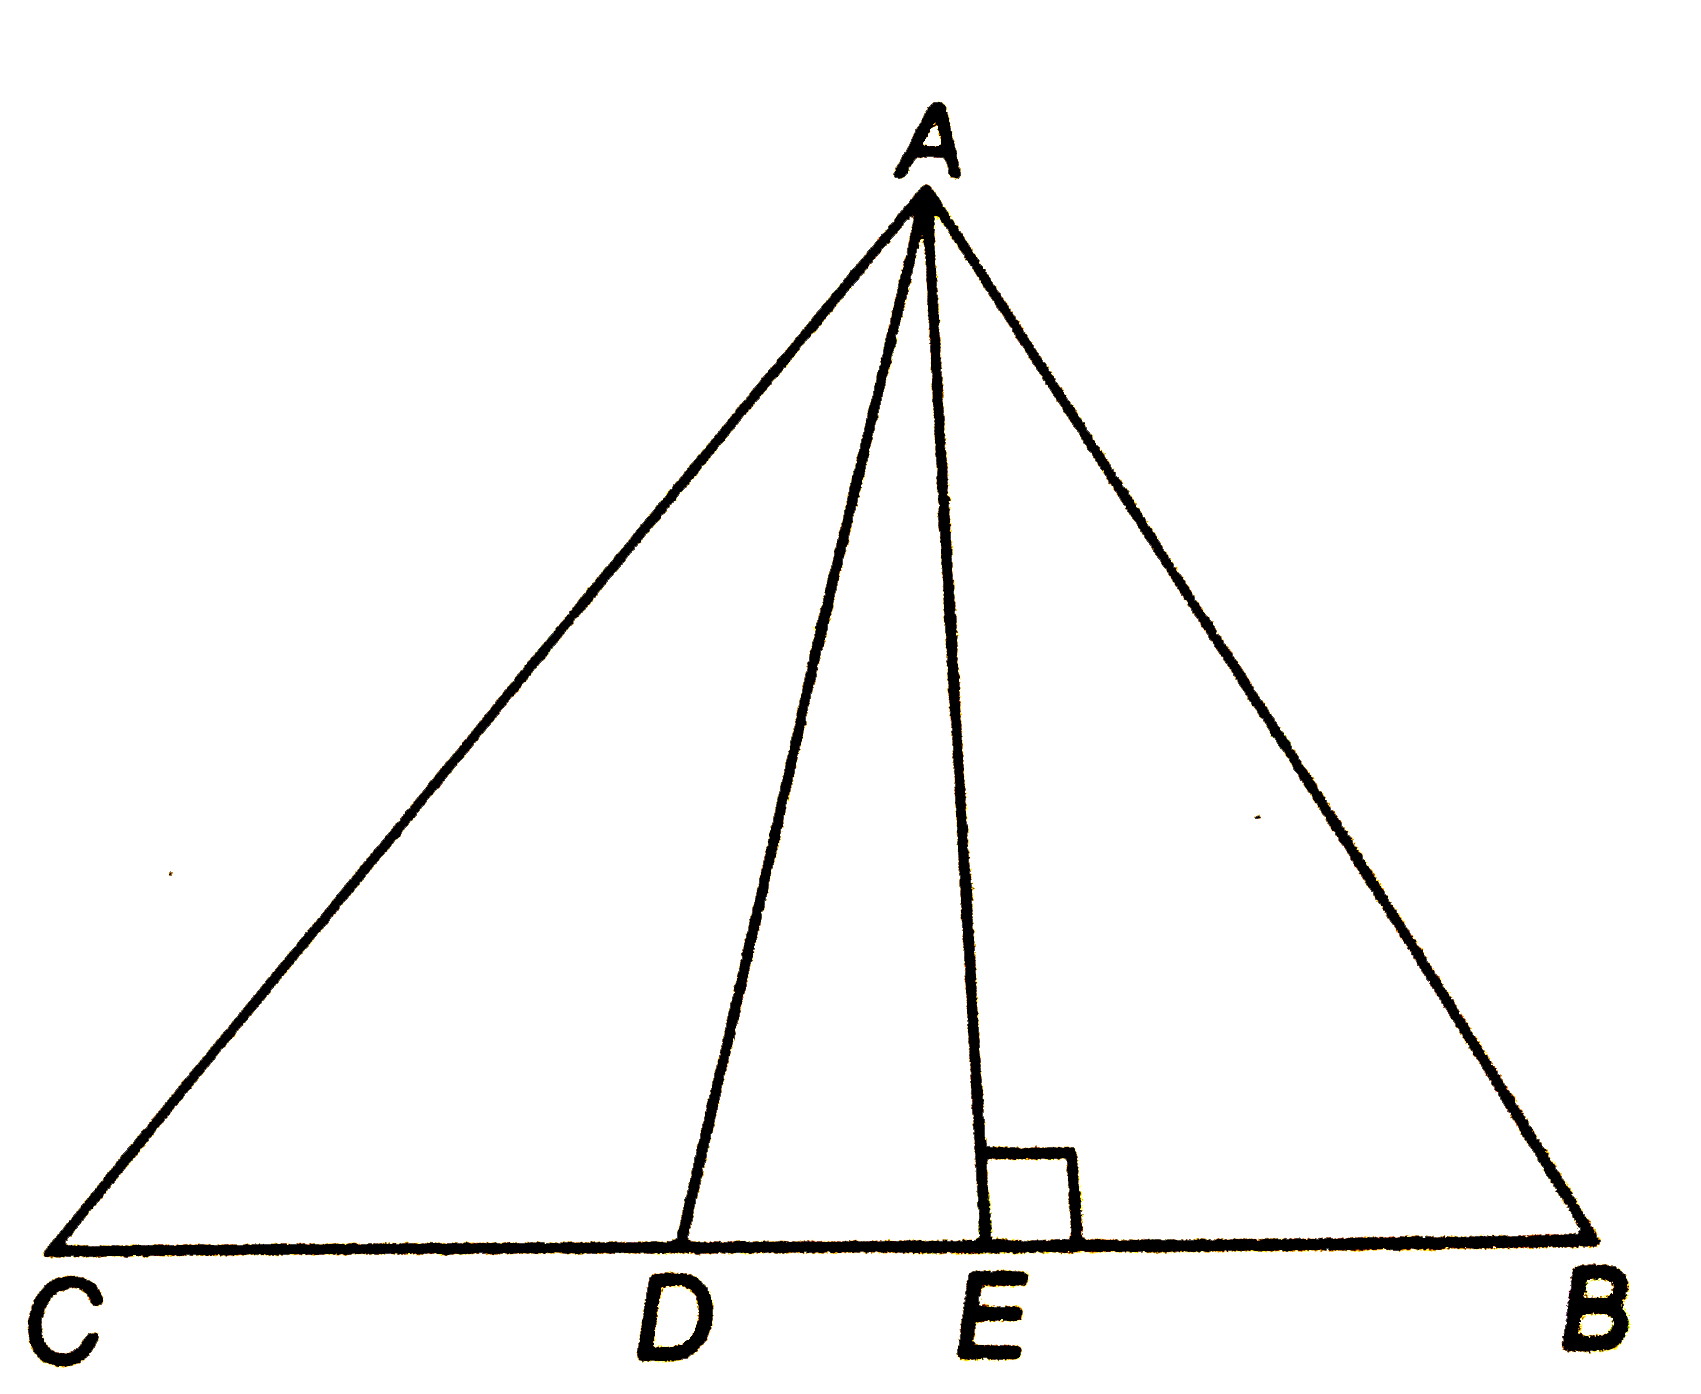 संलग्न चित्र में , ABC एक त्रिभुज है जिसमे AD मध्यिका है और AEbotBC  है सिद्ध कीजिये कि    2AB^2+2AC^2=4AD^2+BC^2